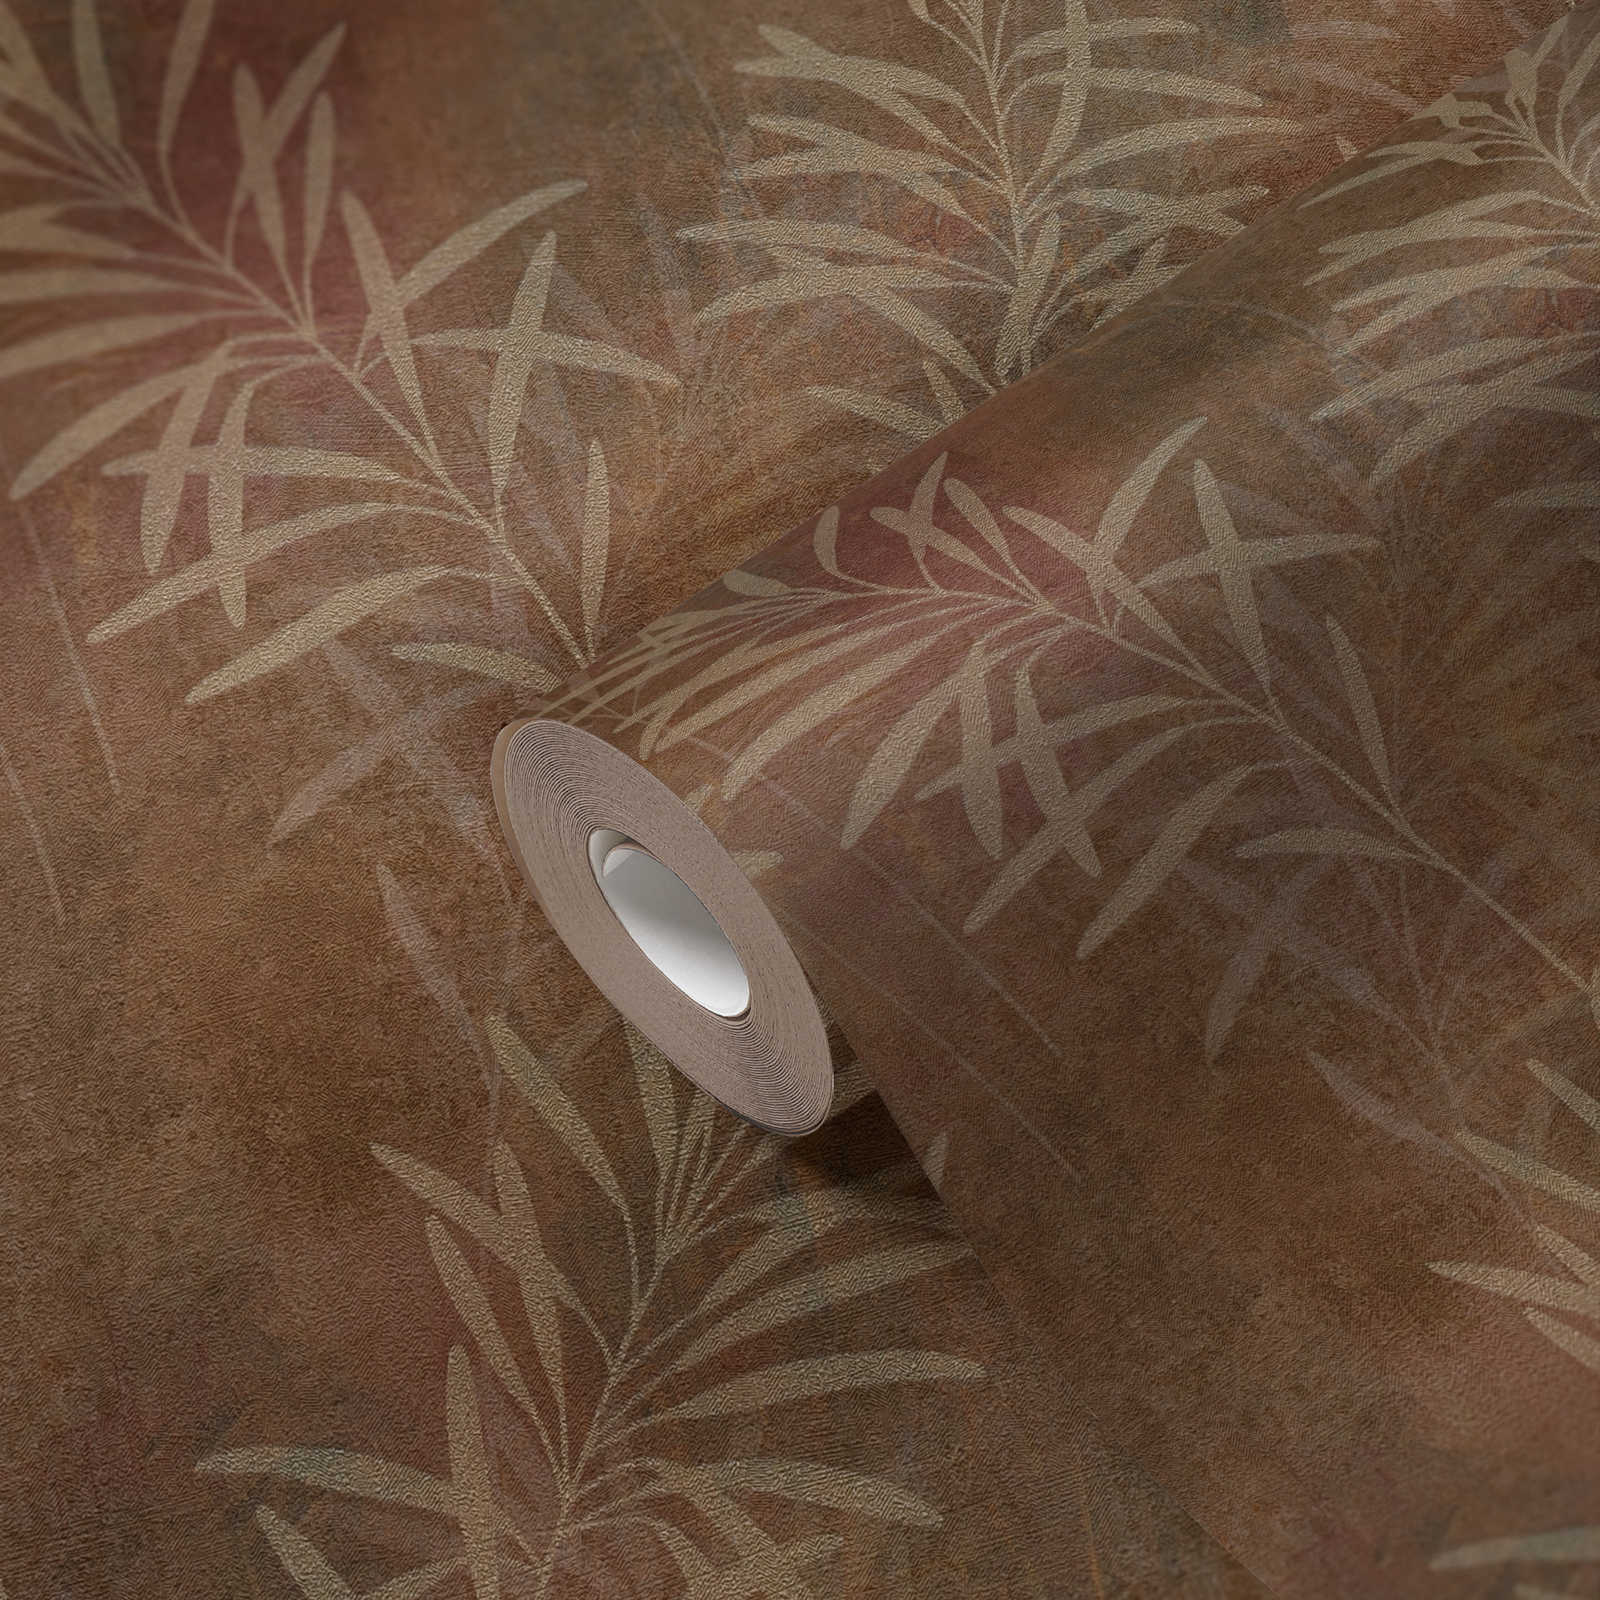             Papel pintado no tejido con motivos de hierba y estructura fina - marrón, beige, metálico
        